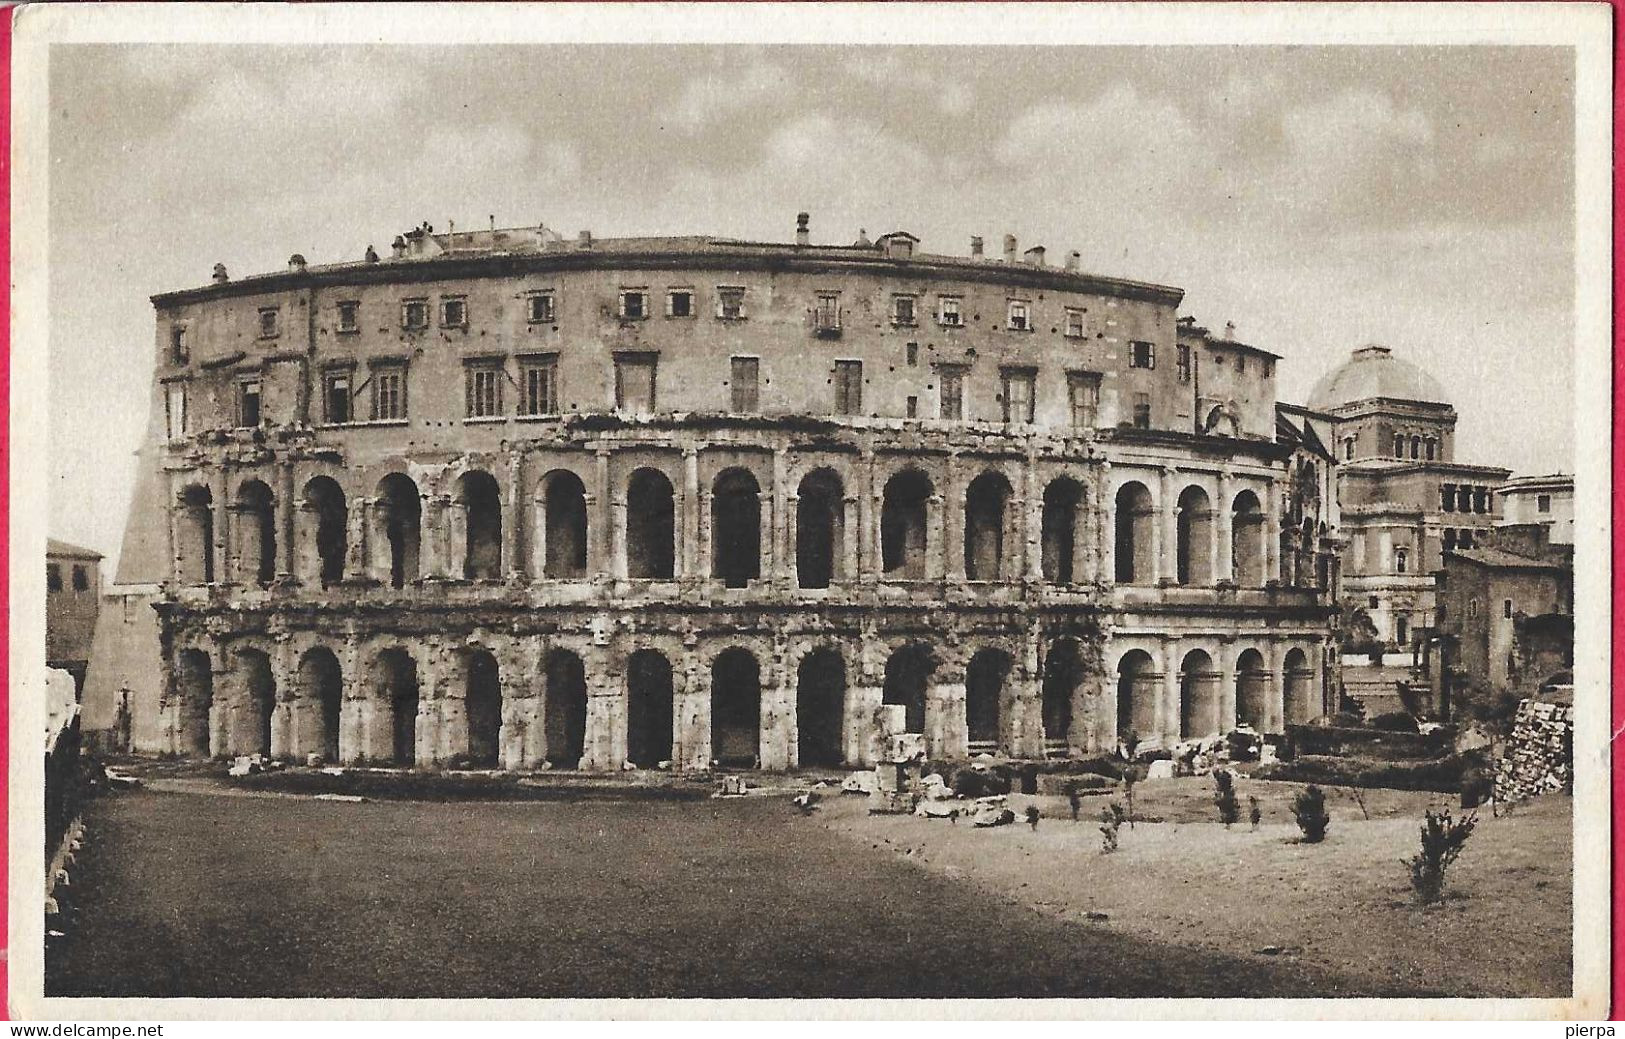 ROMA - TEATRO MARCELLO - FORMATO PICCOLO - EDIZ. ORIGINALE C. CAPELLO MILANO 1936 - NUOVA - Andere Monumente & Gebäude